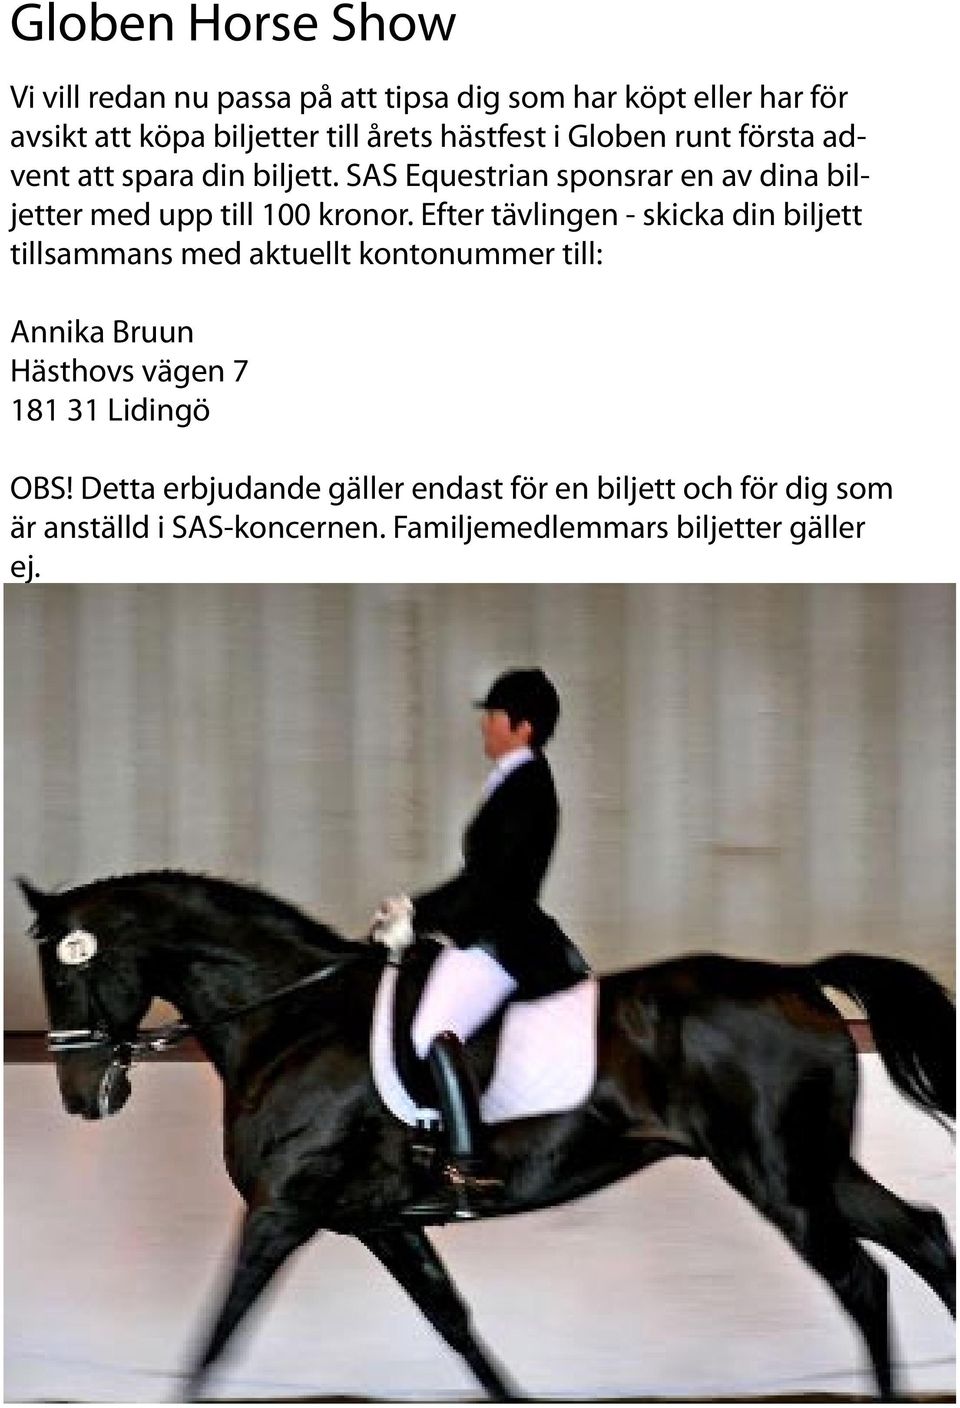 SAS Equestrian sponsrar en av dina biljetter med upp till 100 kronor.